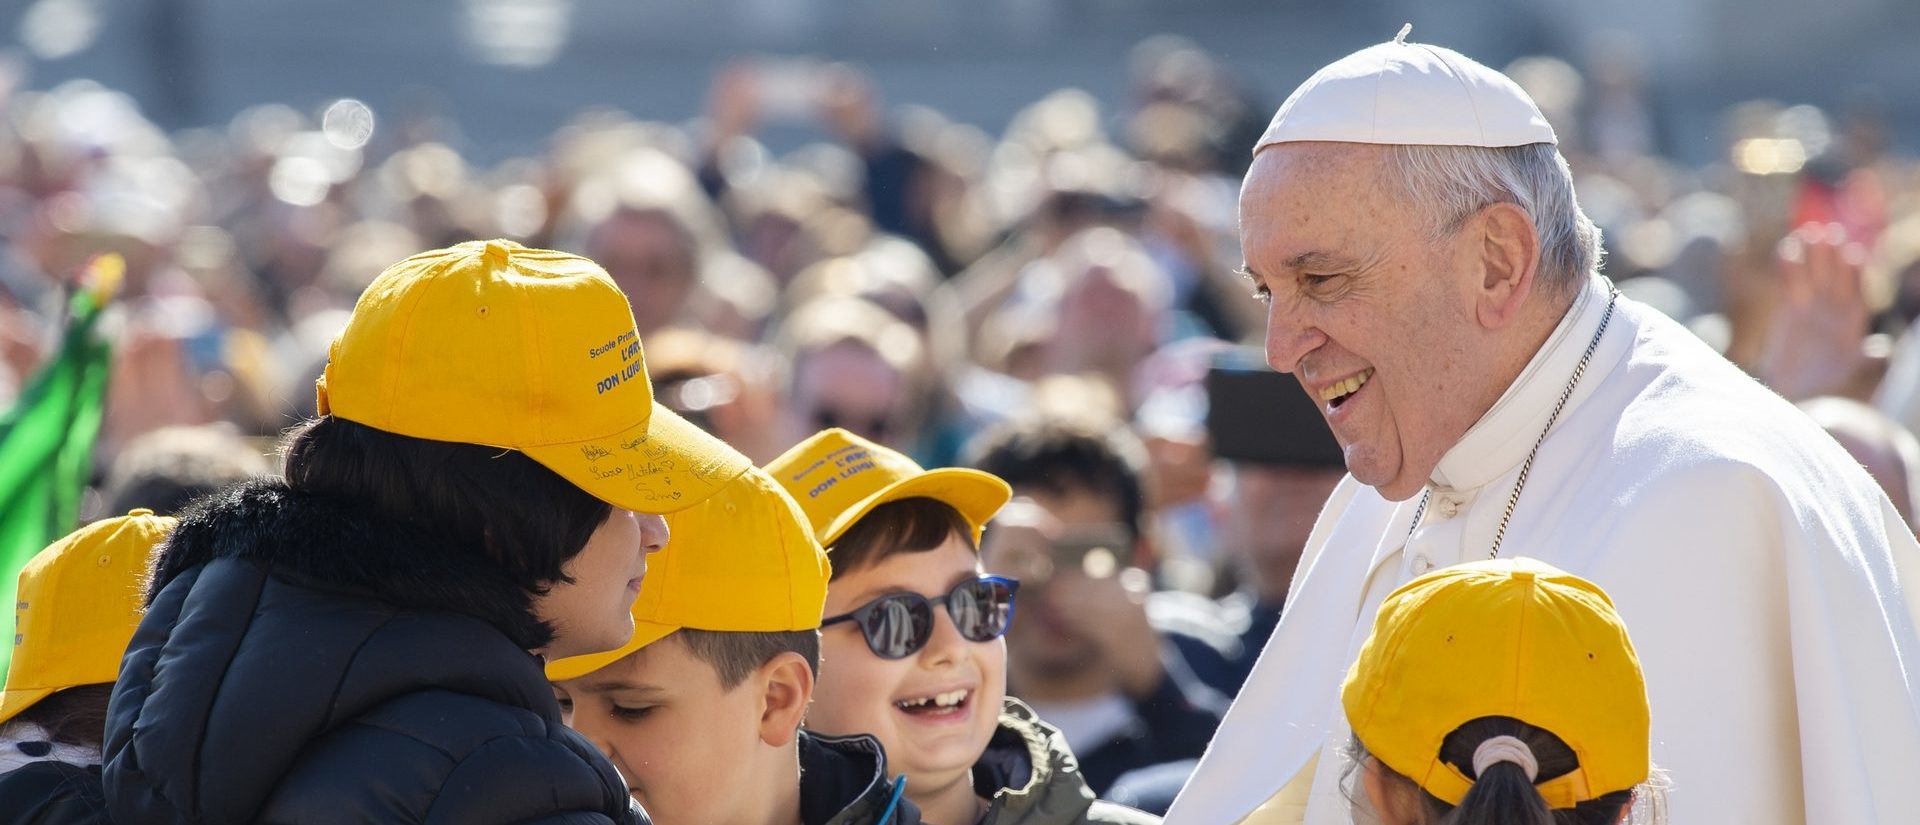 Le pape François est populaire chez les jeunes  |  © Antoine Mekary I.Media